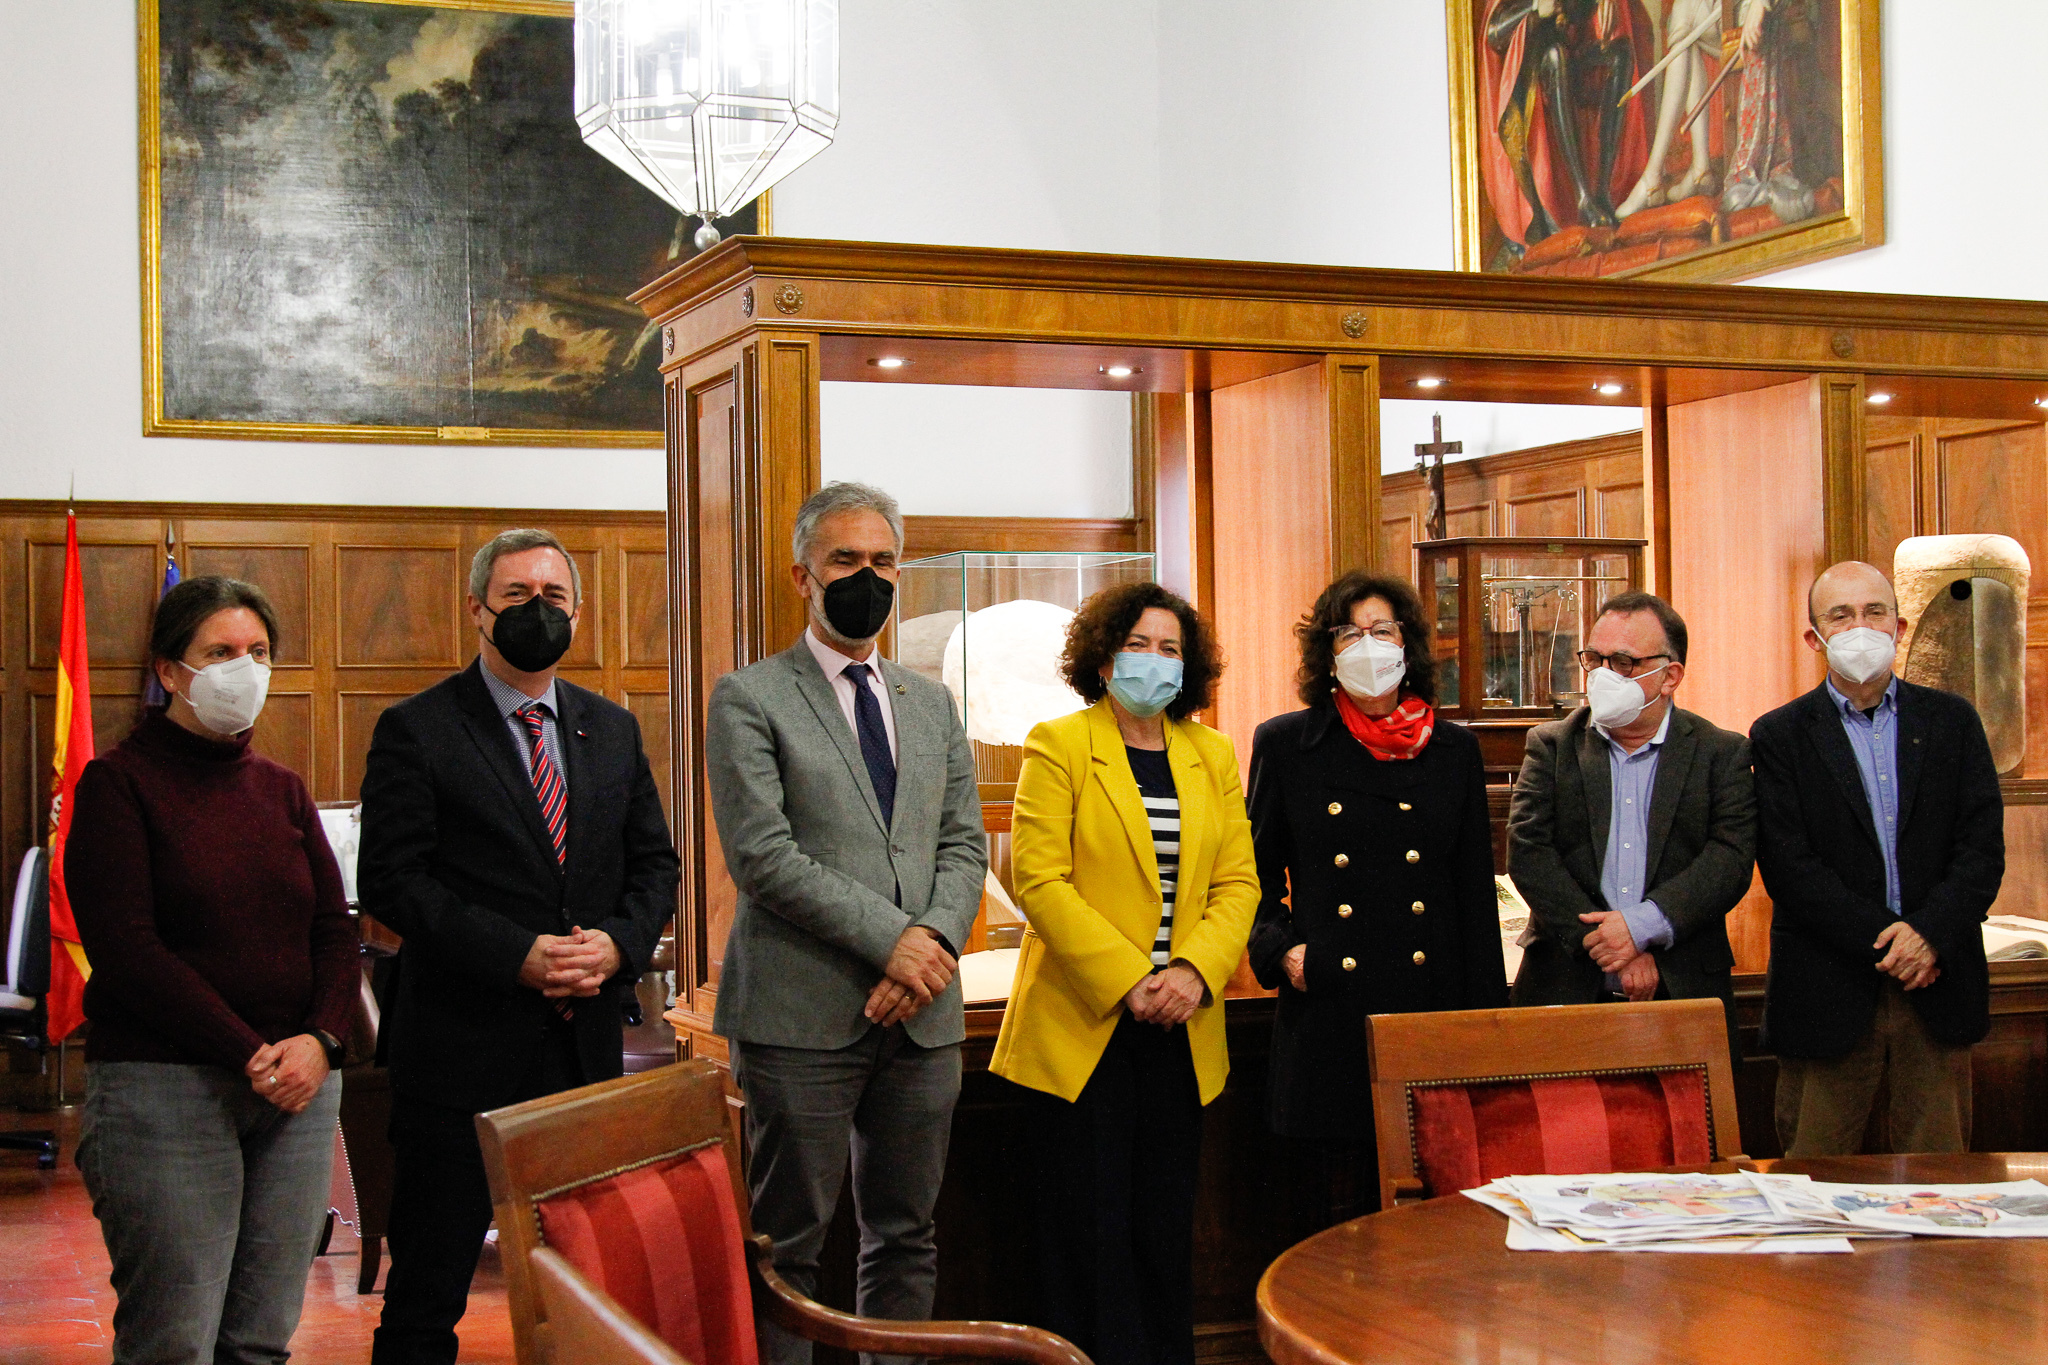 La UGR y la familia de Francisco Martín Morales firman el convenio de donación del archivo de obra gráfica del dibujante a la universidad